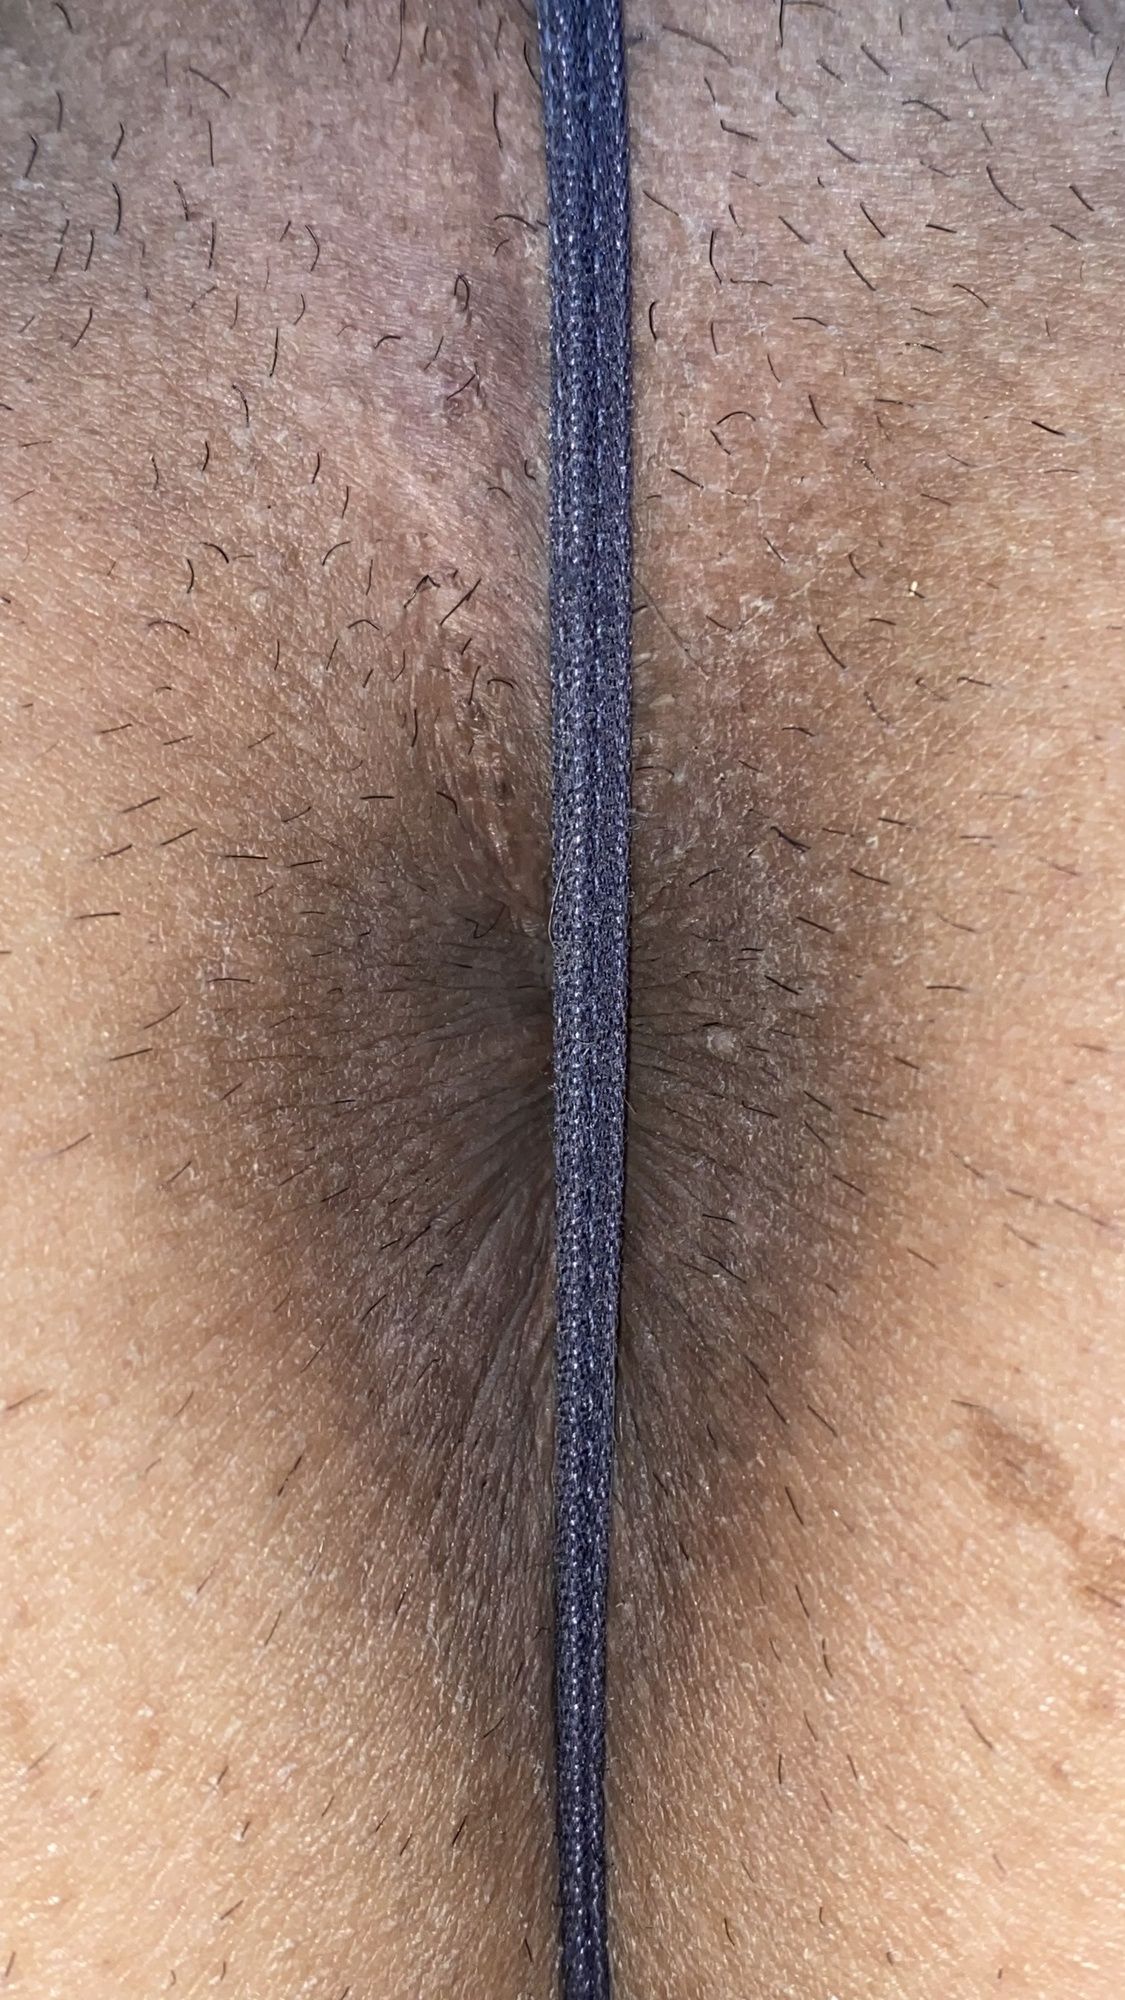 Underwear and buttocks, anus #20